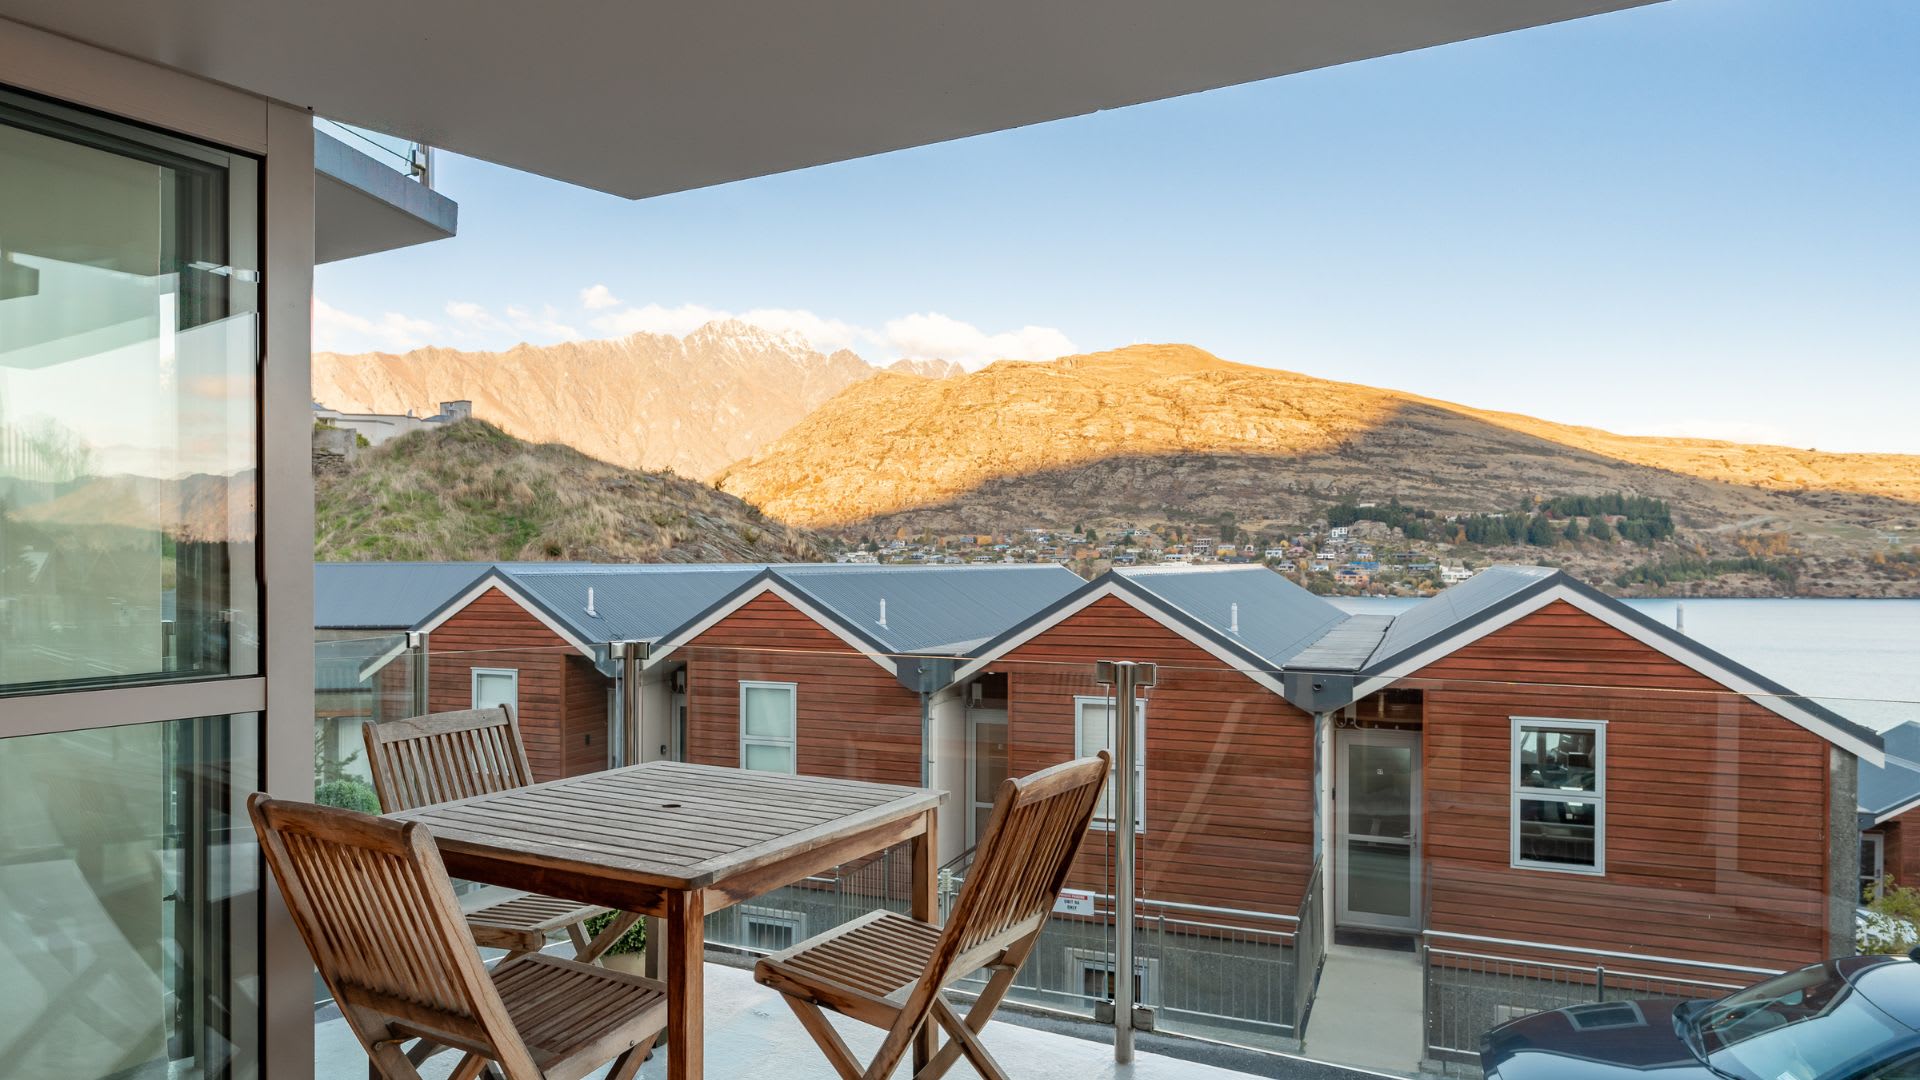 Alpine village - NZ luxury lodges